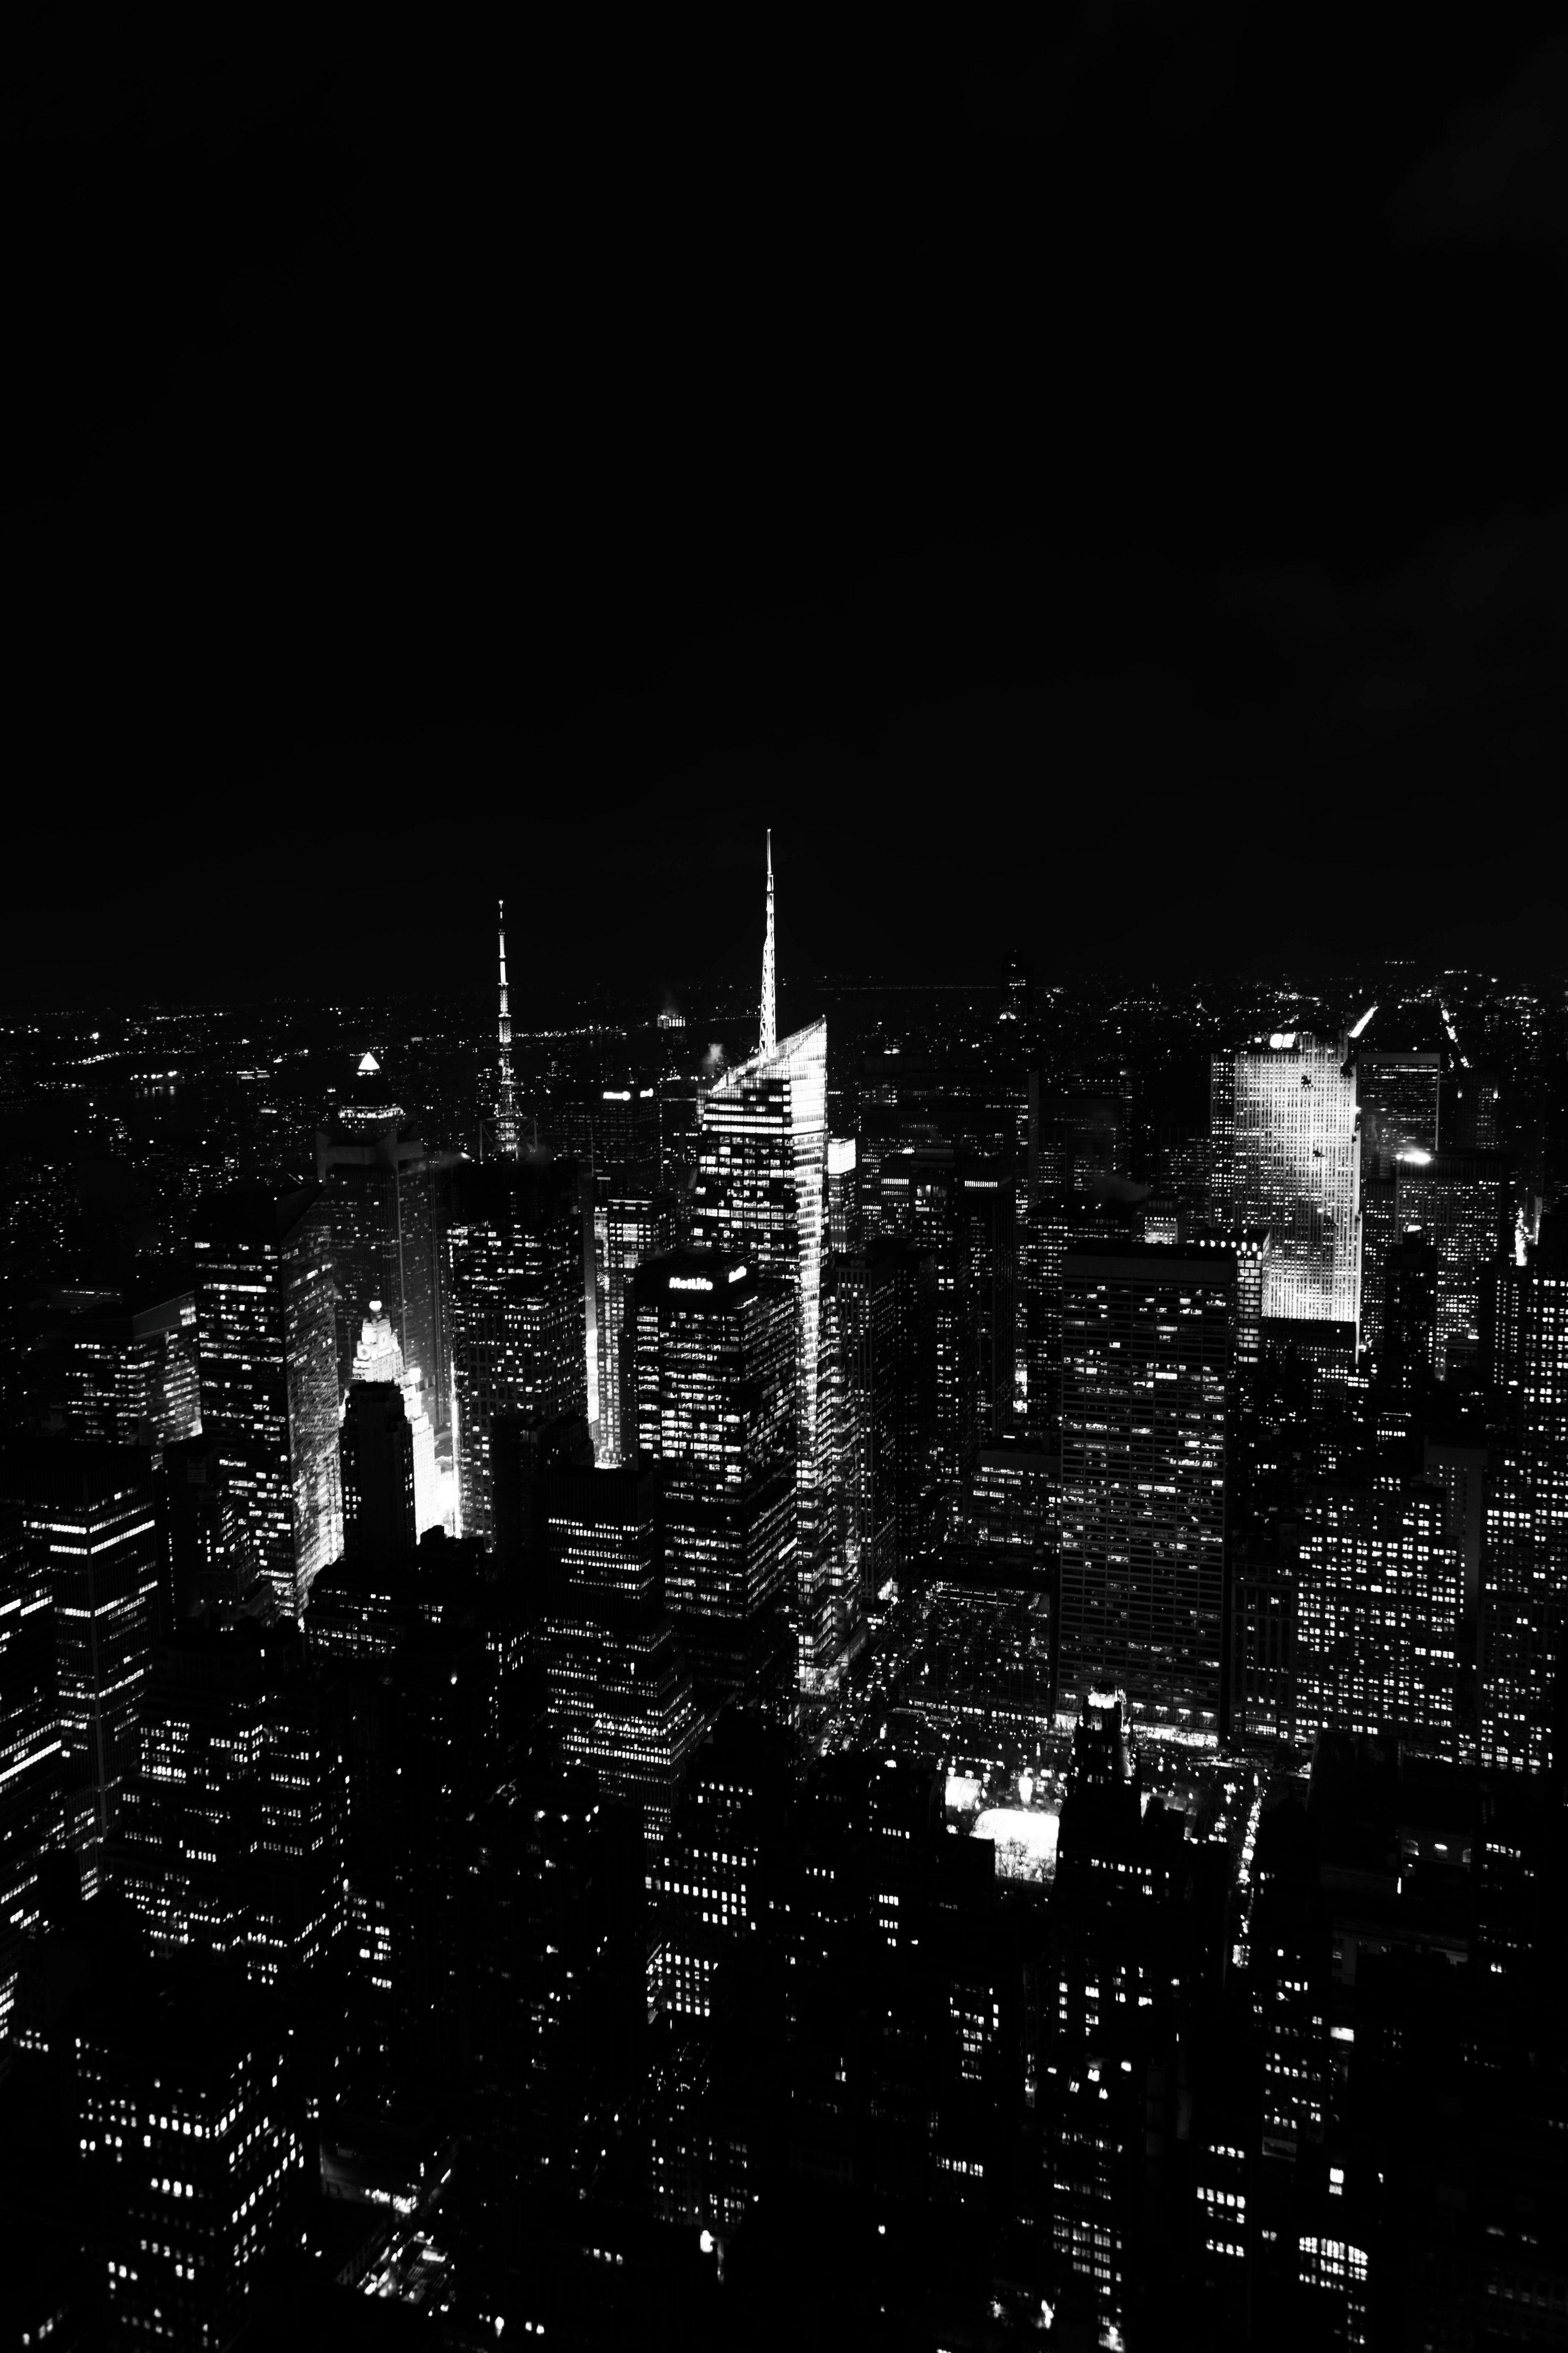 Dark City Aesthetic là xu hướng tạo ra khung cảnh đen trắng, trầm buồn và đầy tính nghệ thuật. Xem những hình ảnh đen trắng này để thấy rõ sự độc đáo của thành phố, tạo ra một không khí đặc biệt, hấp dẫn và sâu sắc.